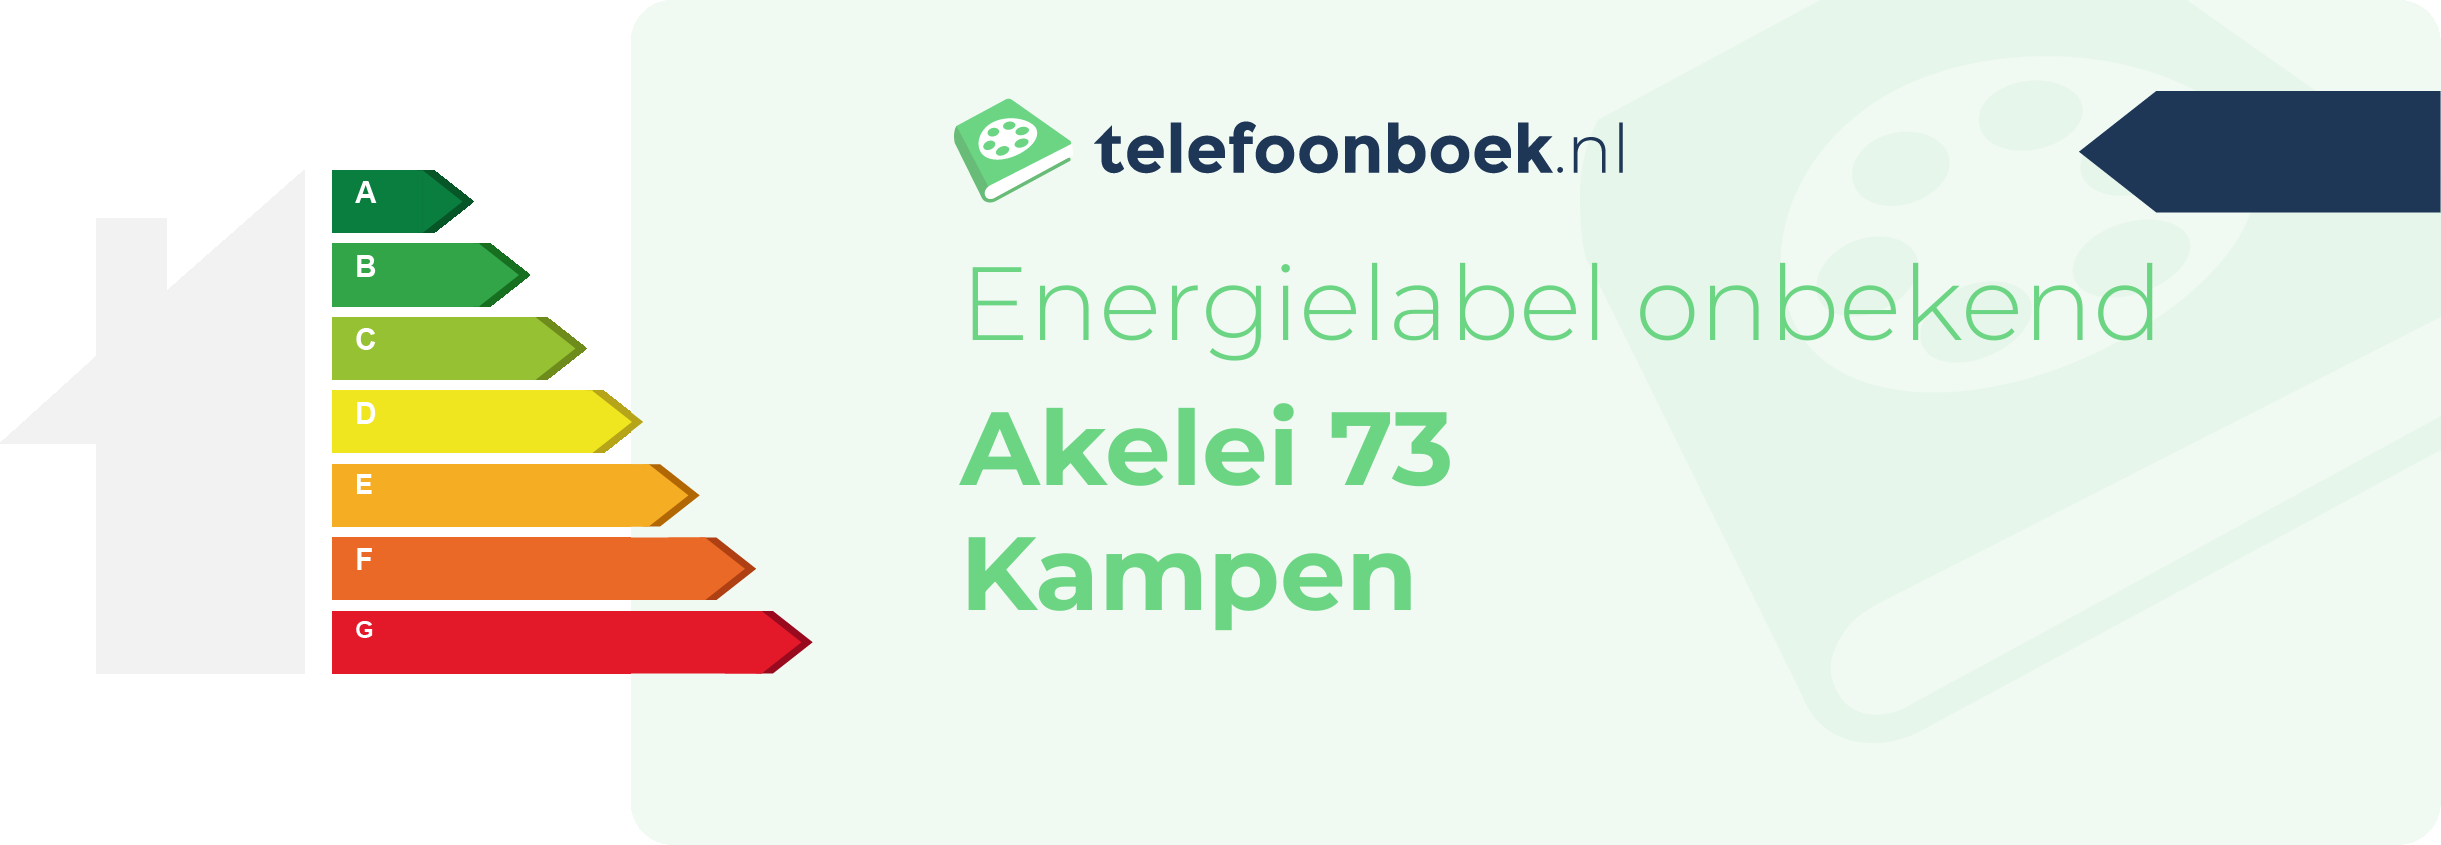 Energielabel Akelei 73 Kampen